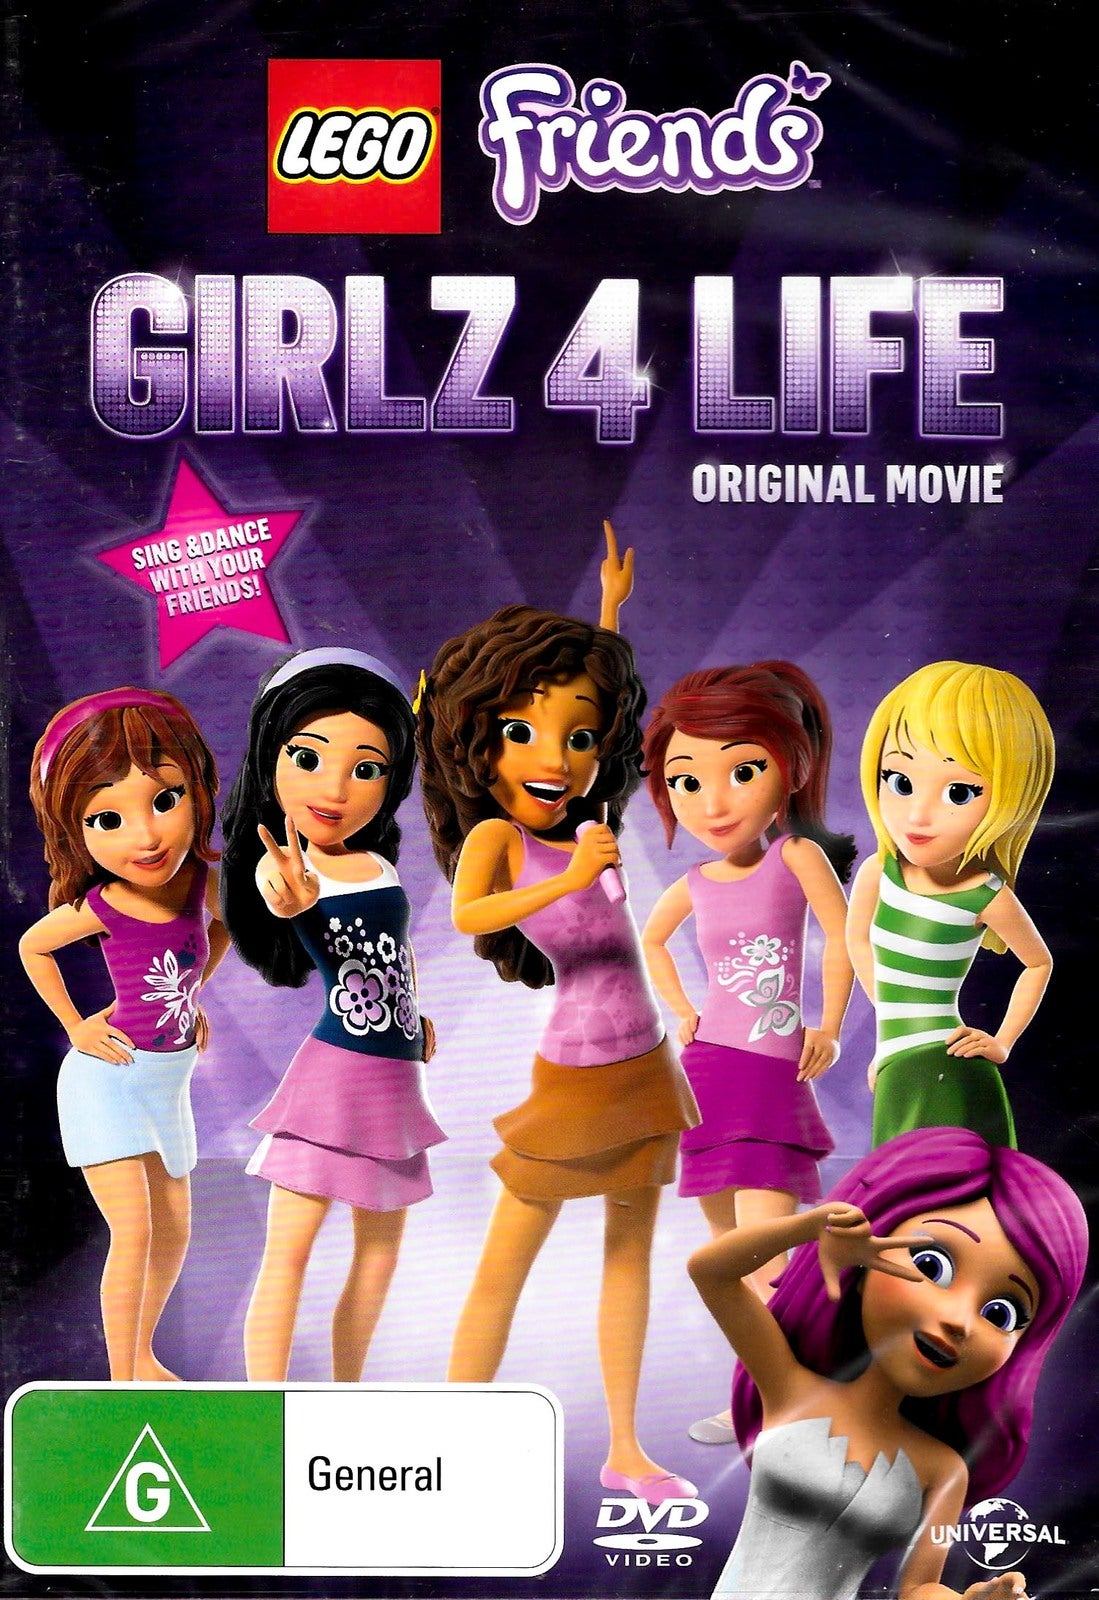 LEGO Friends Girlz 4 Life (Original Movie) -Rare DVD Aus Stock -Family New